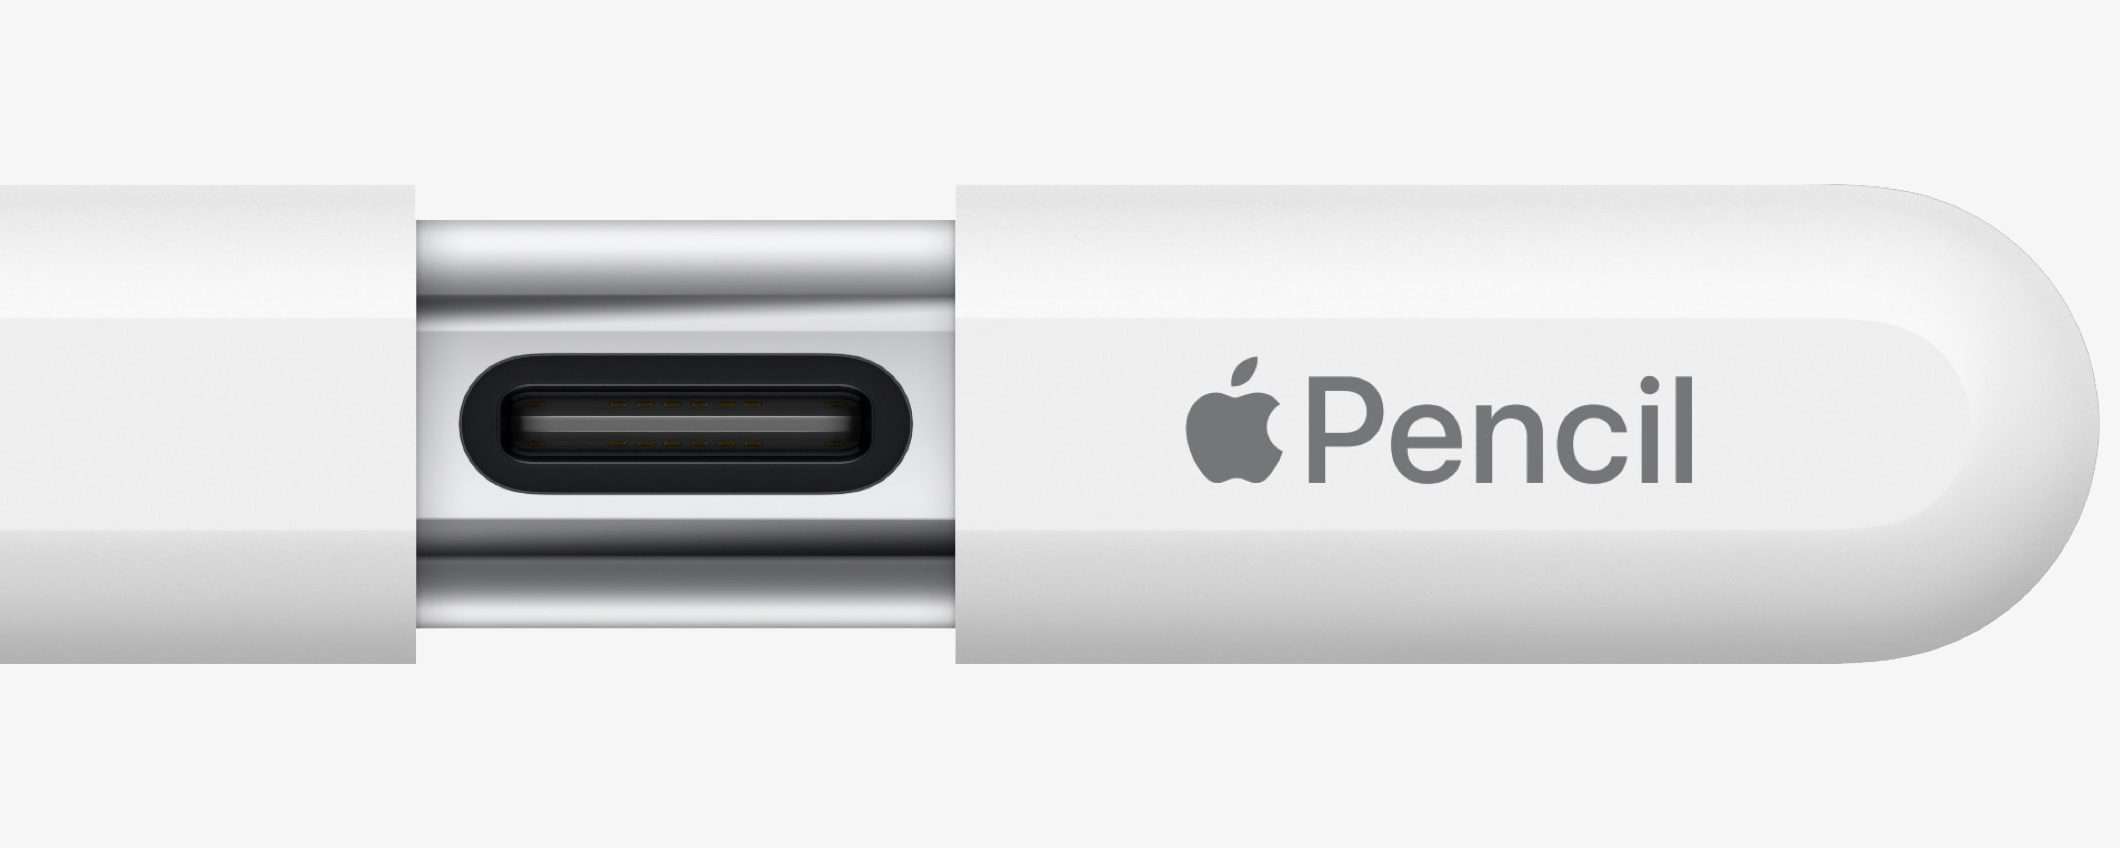 Apple Pencil: un video mostra il meccanismo per usare l'USB-C